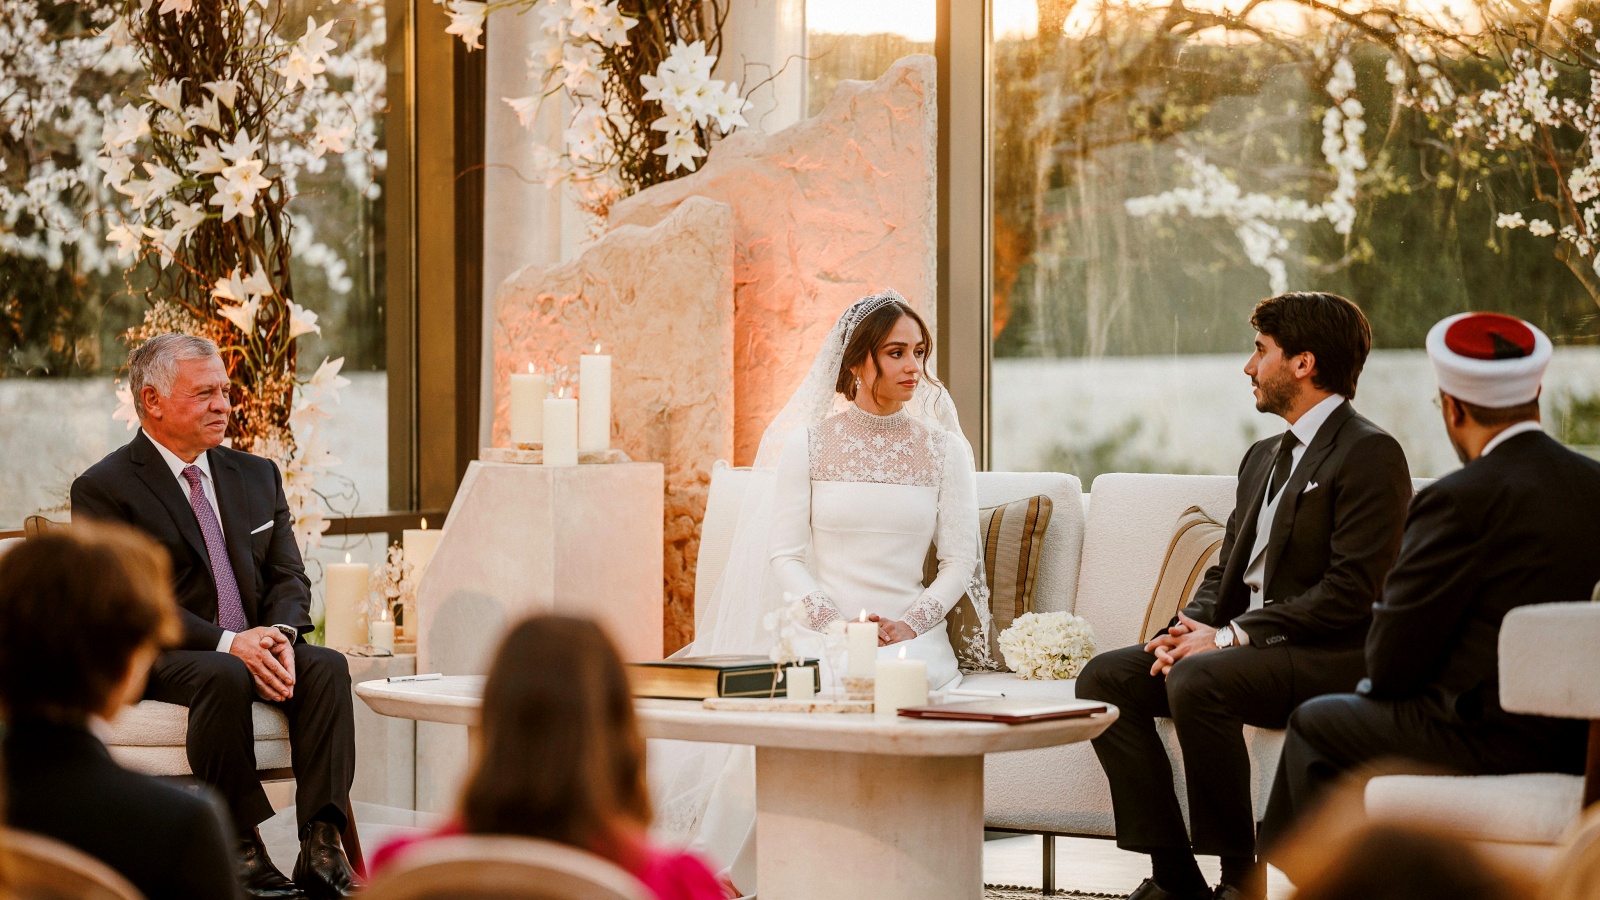 حفل زفاف الأميرة إيمان، ابنة العاهل الأردني الملك عبد الله الثاني والملكة رانيا، من جميل ألكساندر ترميوتس المتحدر من أصول يونانية (وكالة الأنباء الأردنية)